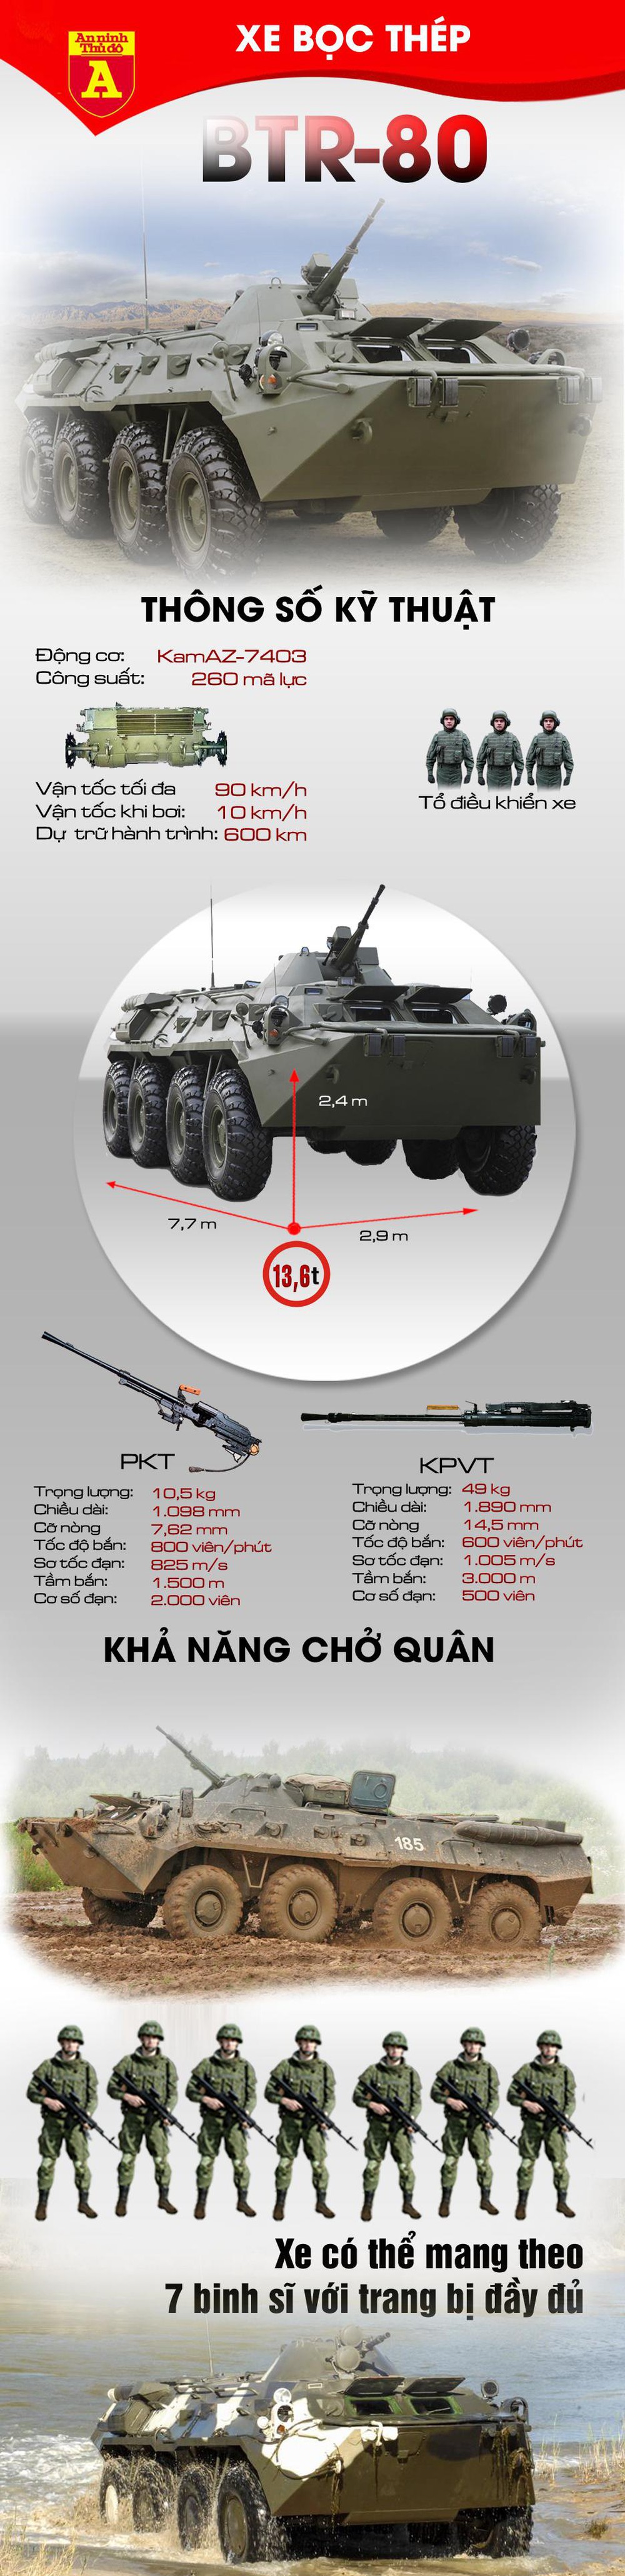 Khả năng chiến đấu của xe bọc thép BTR-80  - Ảnh 1